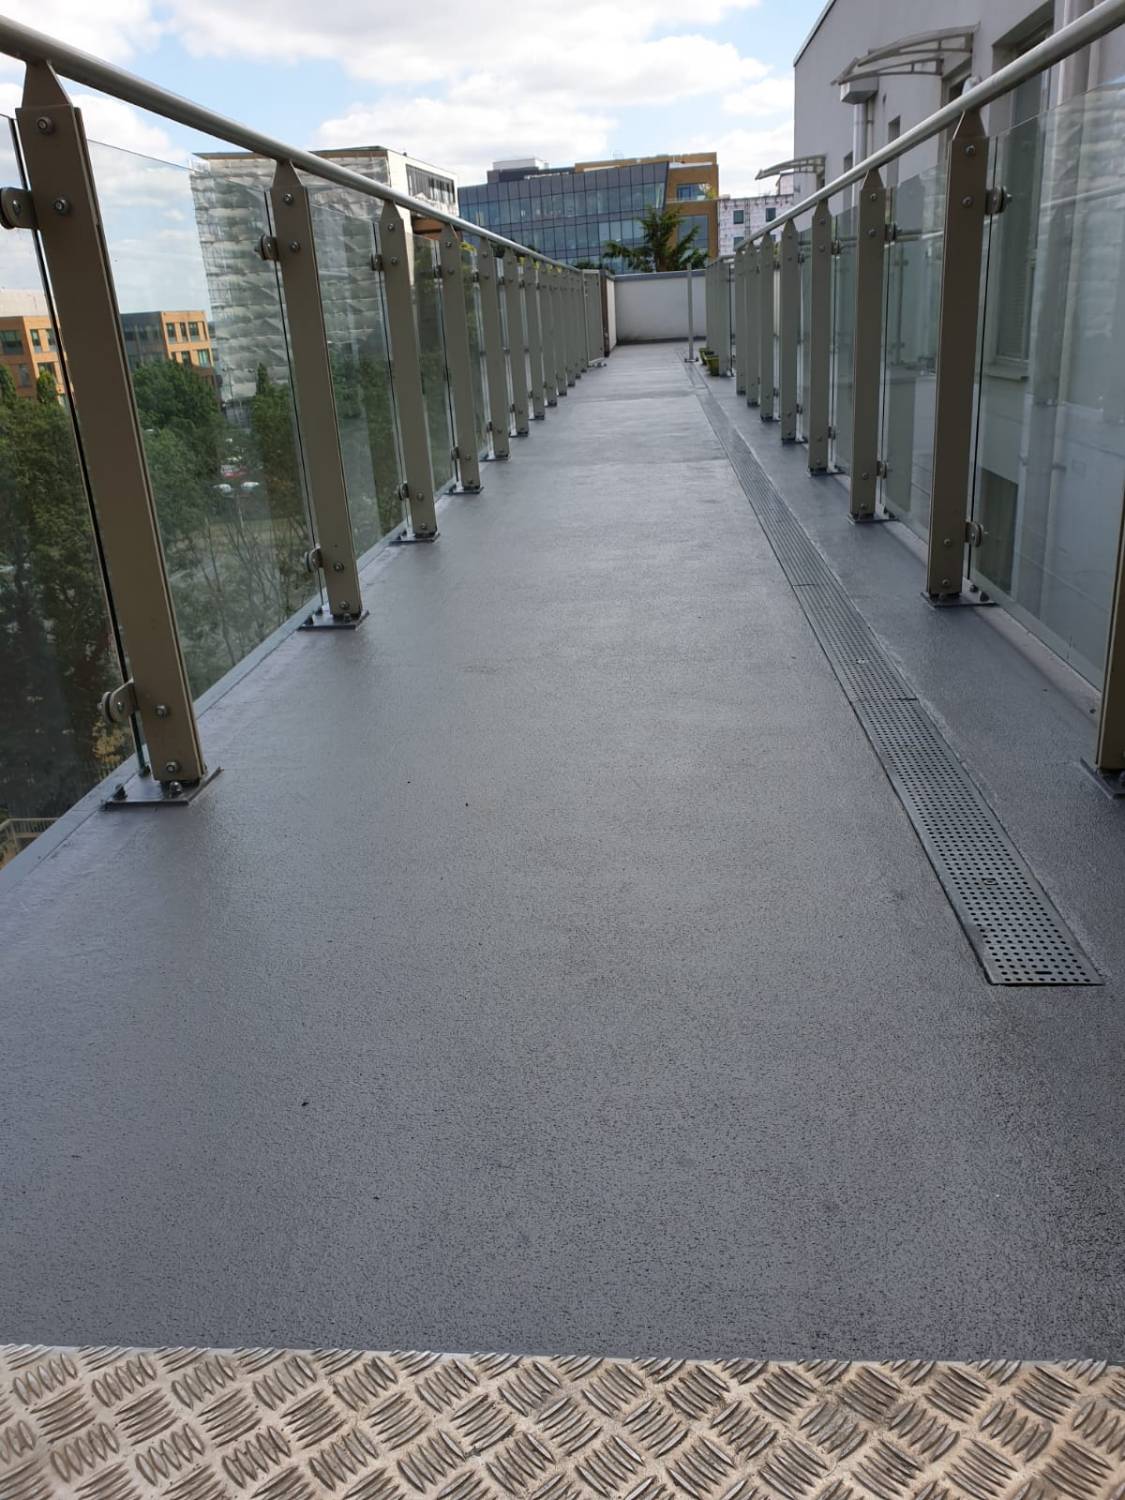 RapidDeck® - PMMA Balcony & Walkway System